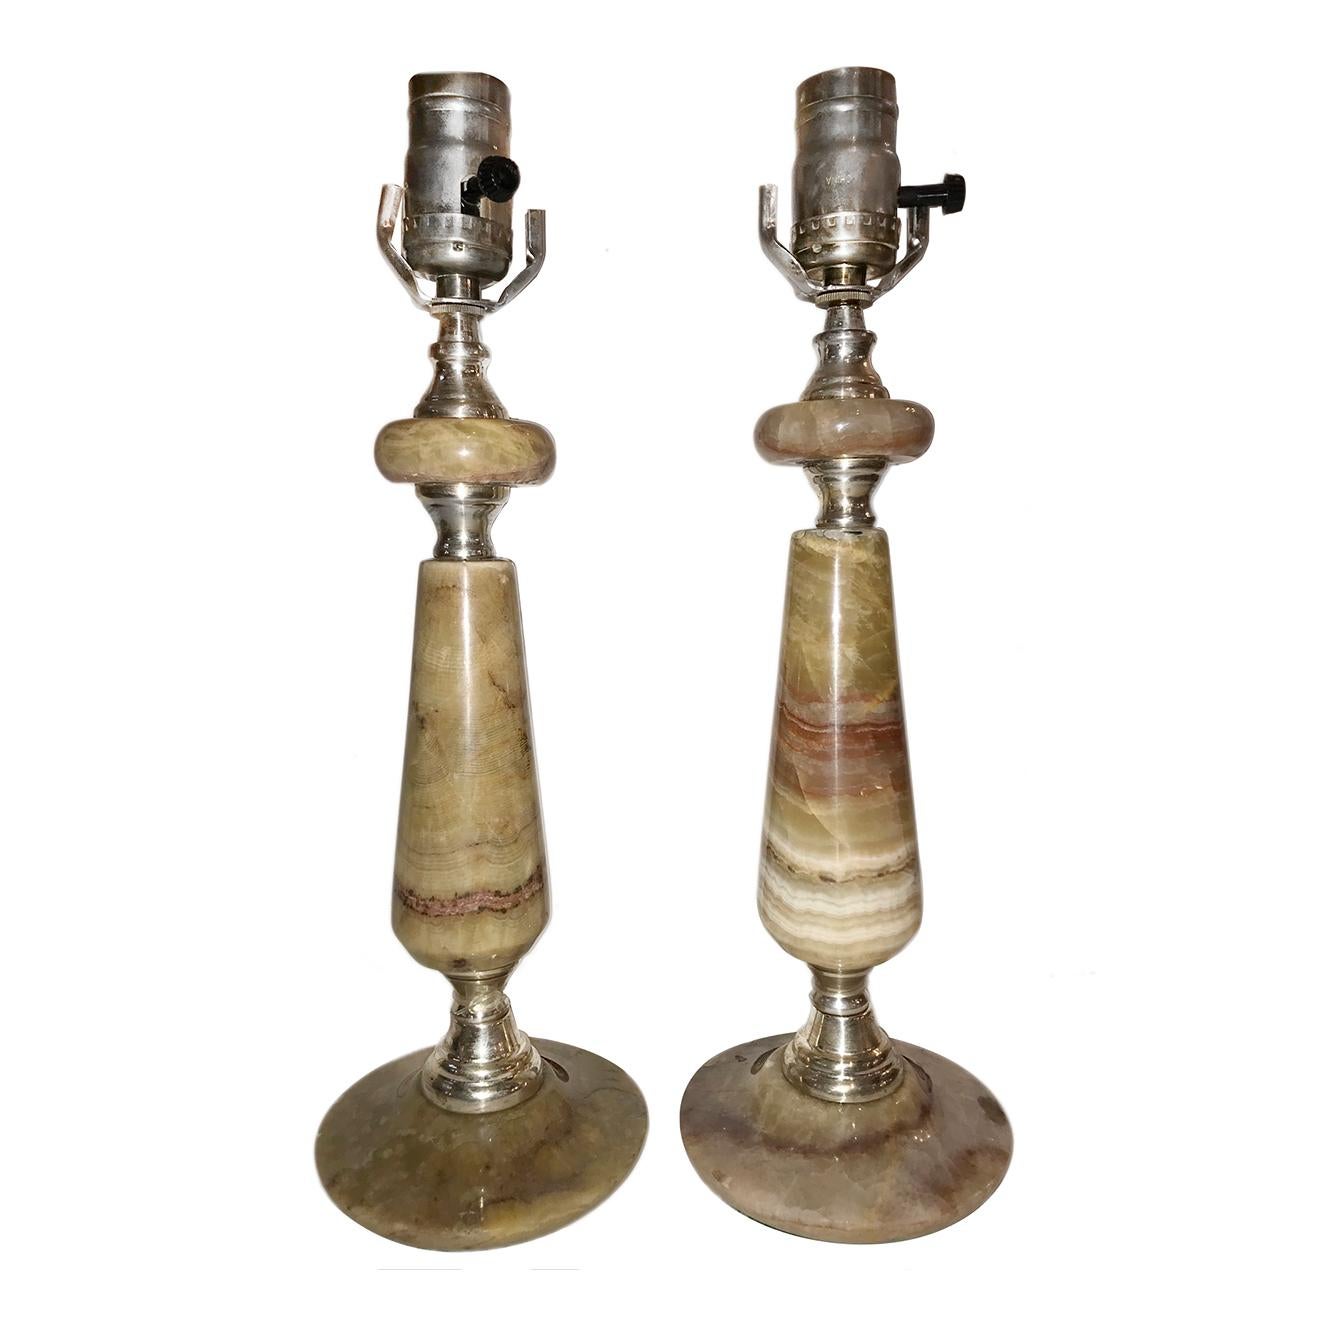 Ein Paar italienische gestreifte Onyx-Tischlampen aus den 1940er Jahren mit Silberbeschlägen. 

Messung:
Höhe des Körpers 11,5